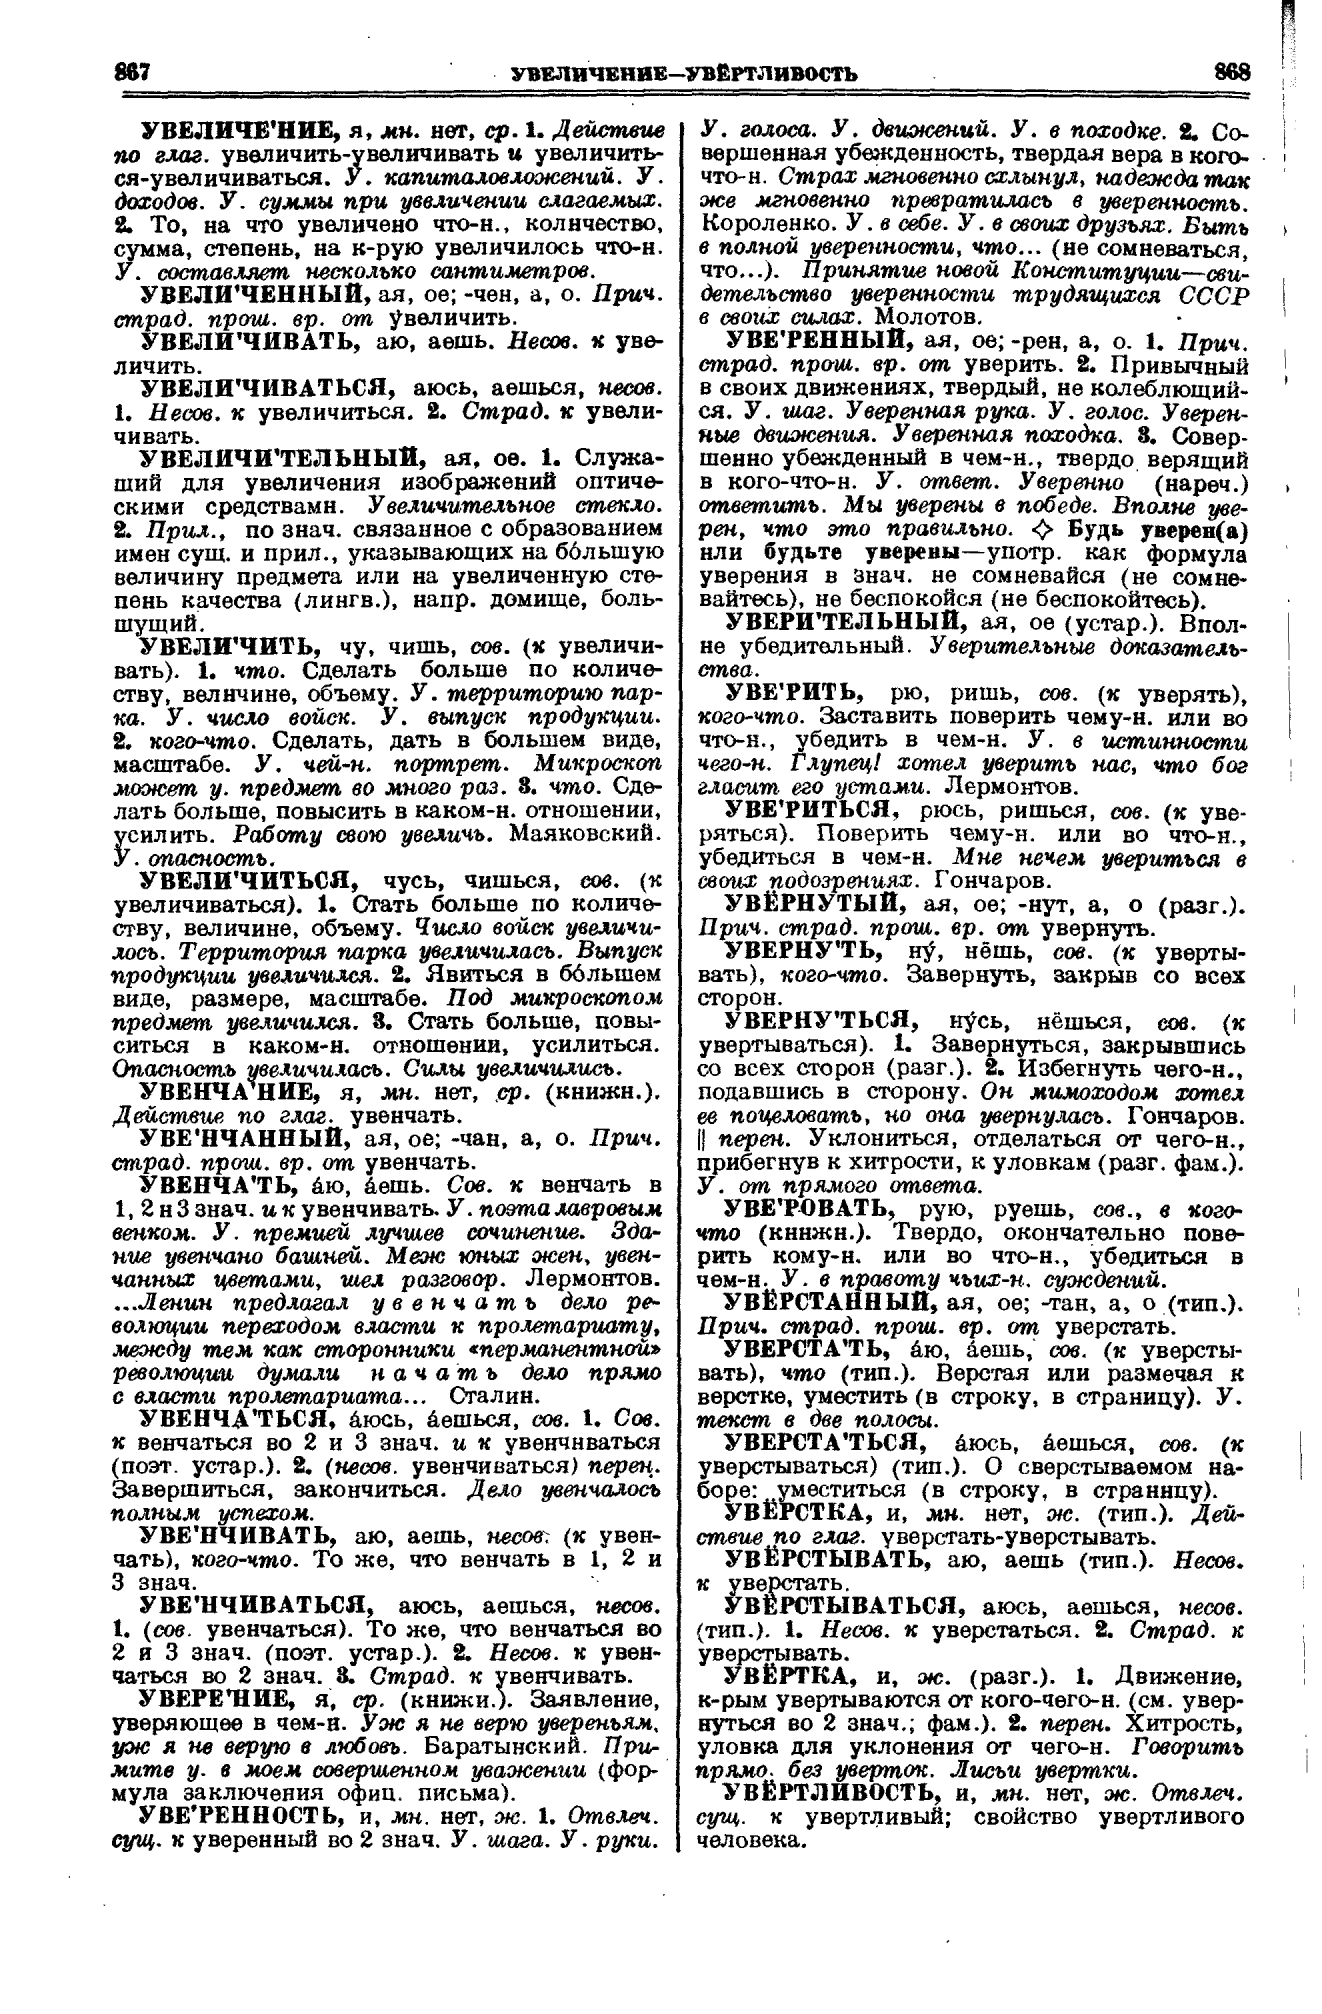 Фотокопия pdf / скан страницы 434 толкового словаря Ушакова (том 1)